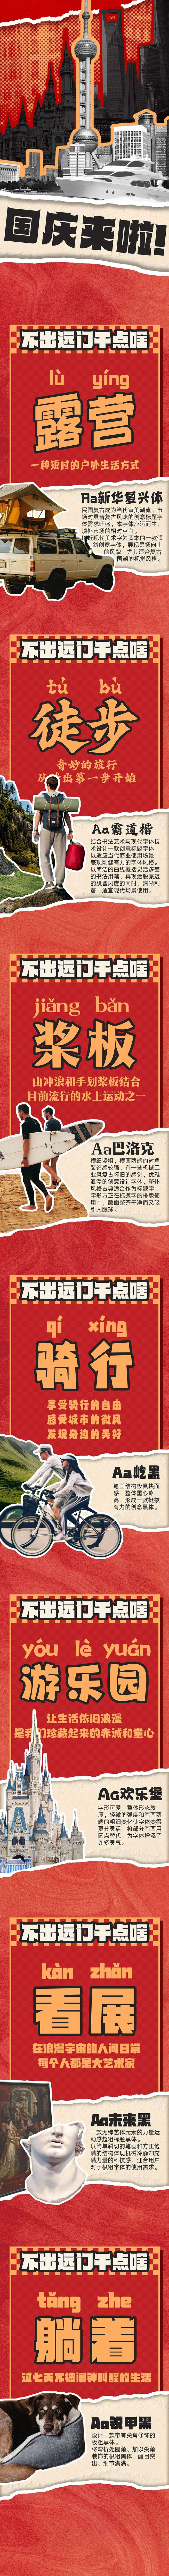 7款户外生活海报中文字体 设计素材 第1张